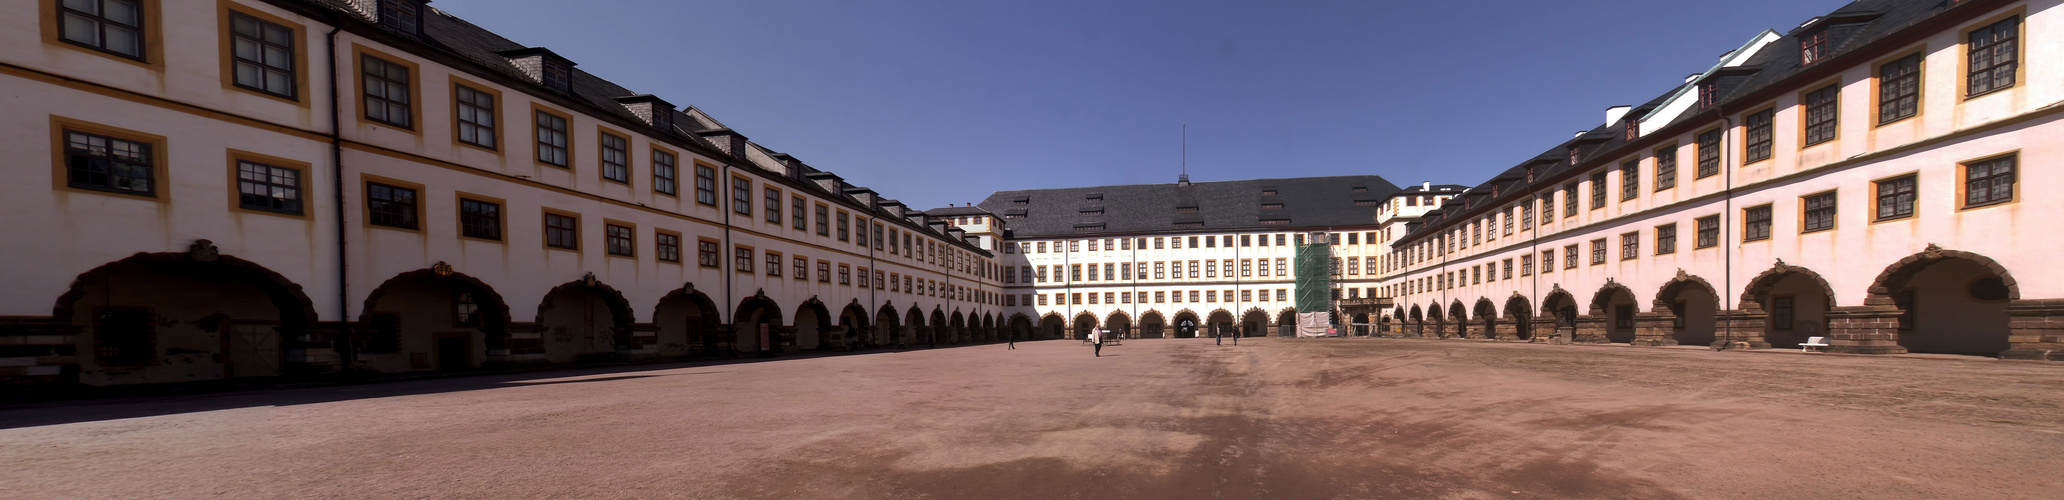 Innenhof-Schloss-Friedenstein